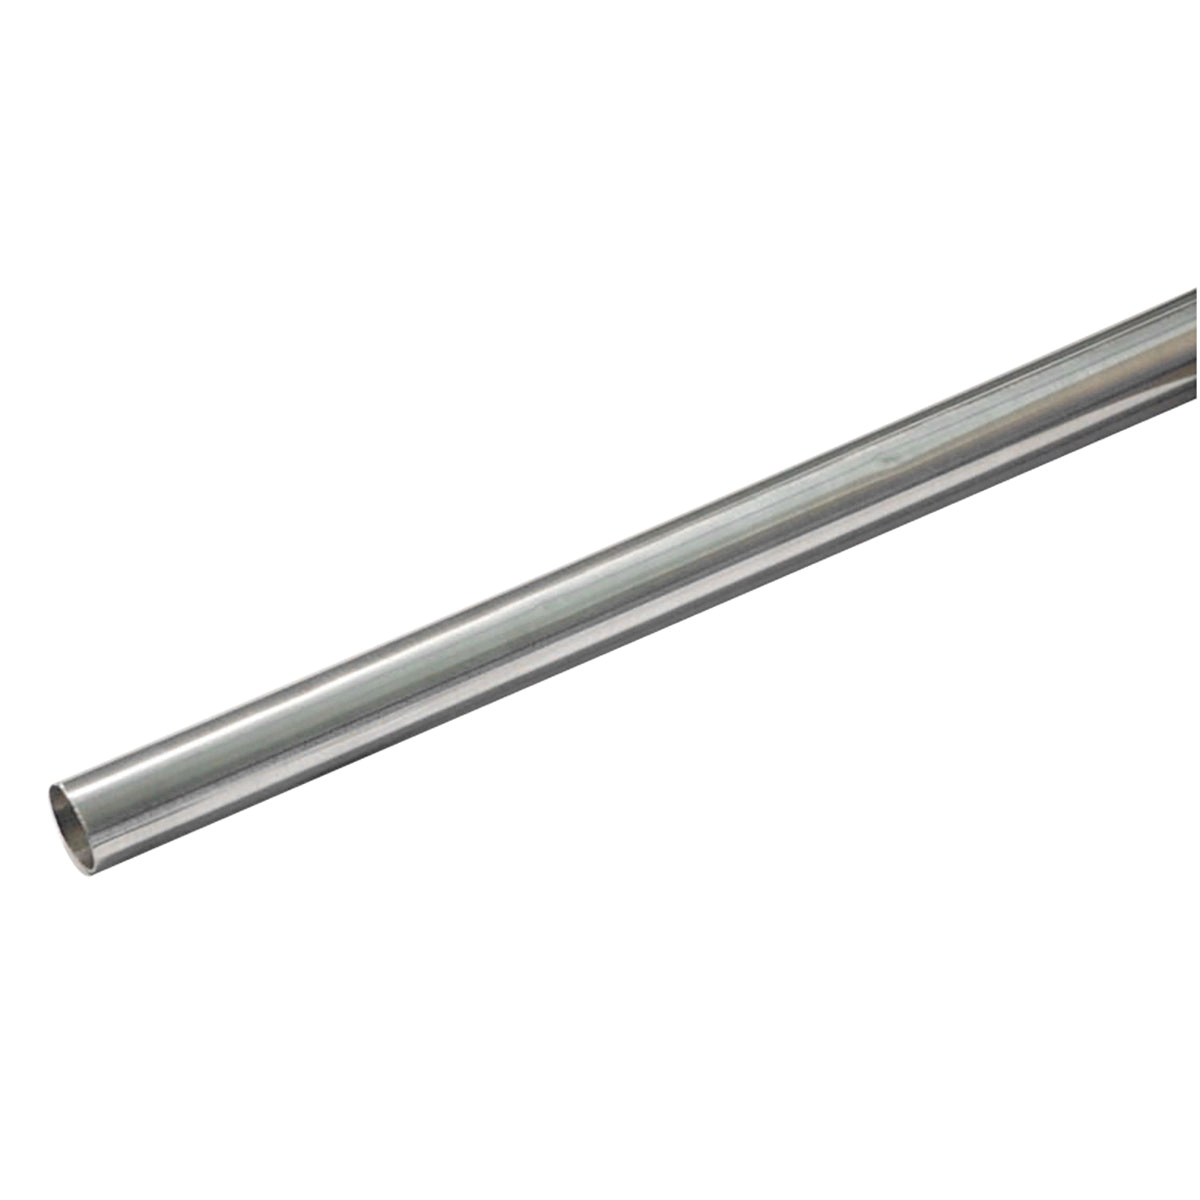 Shower Rods - Steel Shower Rod - 5 - Polished Chrome